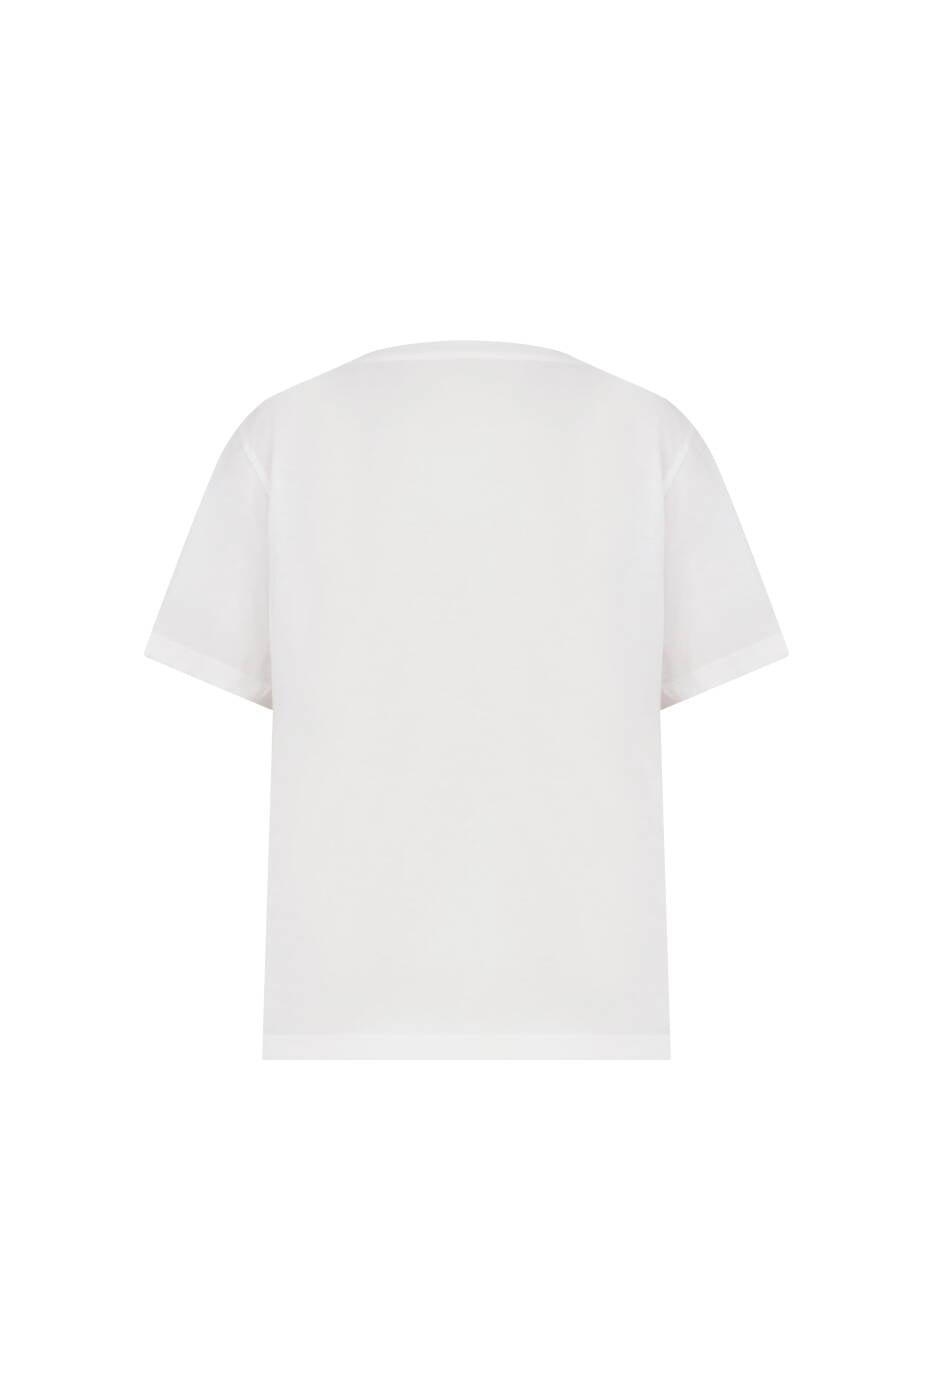 V Neck Printed Floral T-Shirt White --[WHITE]